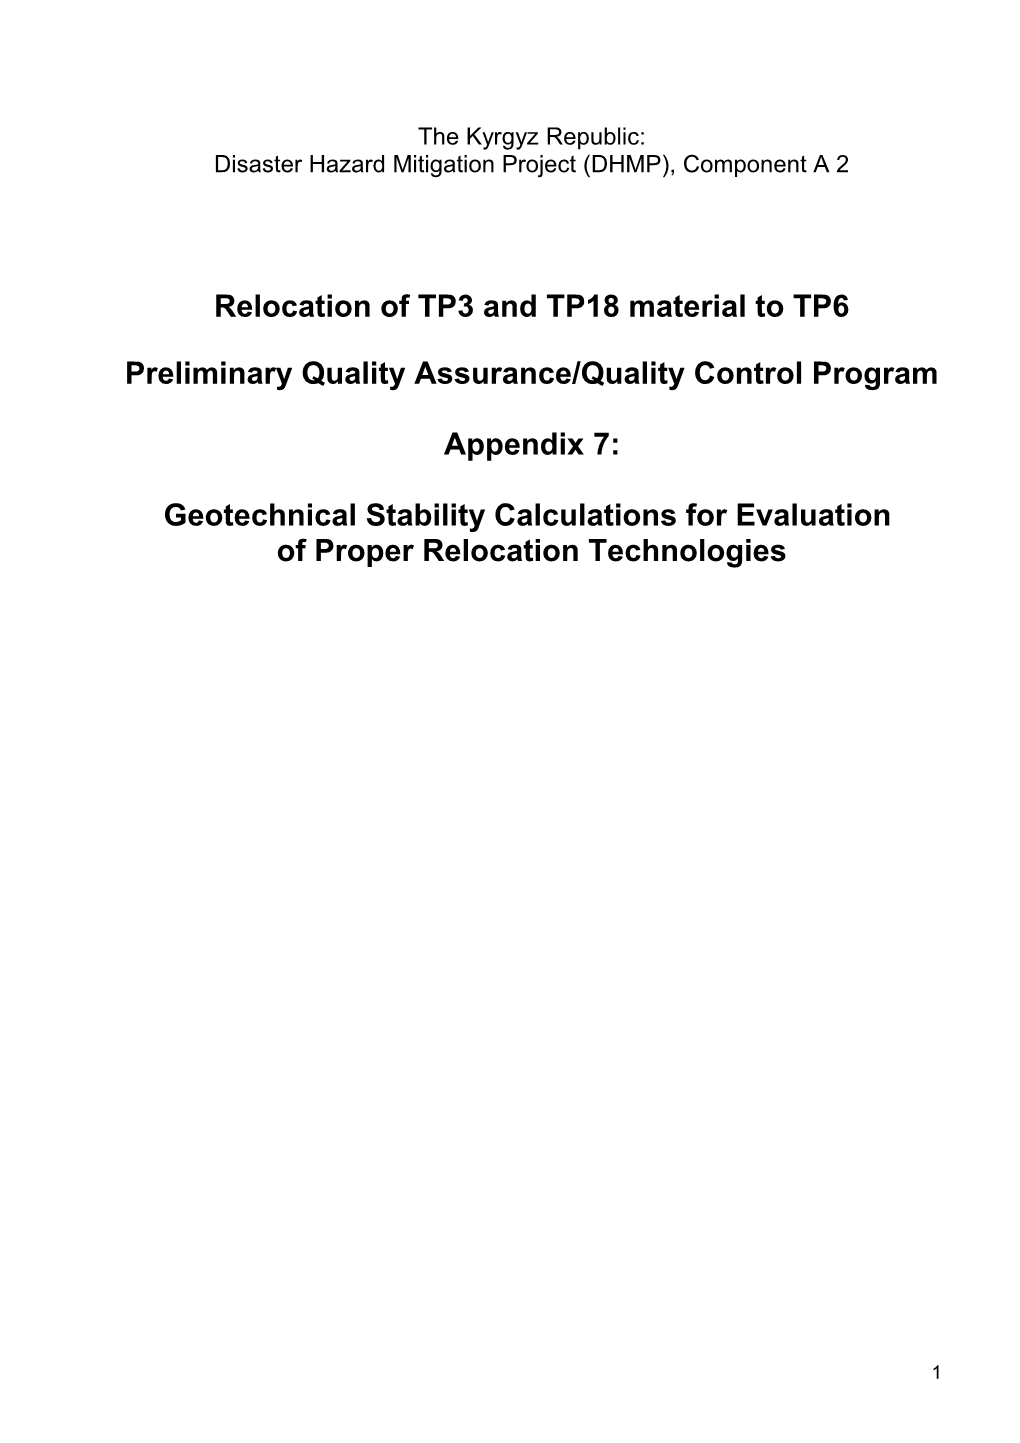 Preliminary Quality Assurance/Quality Control Program